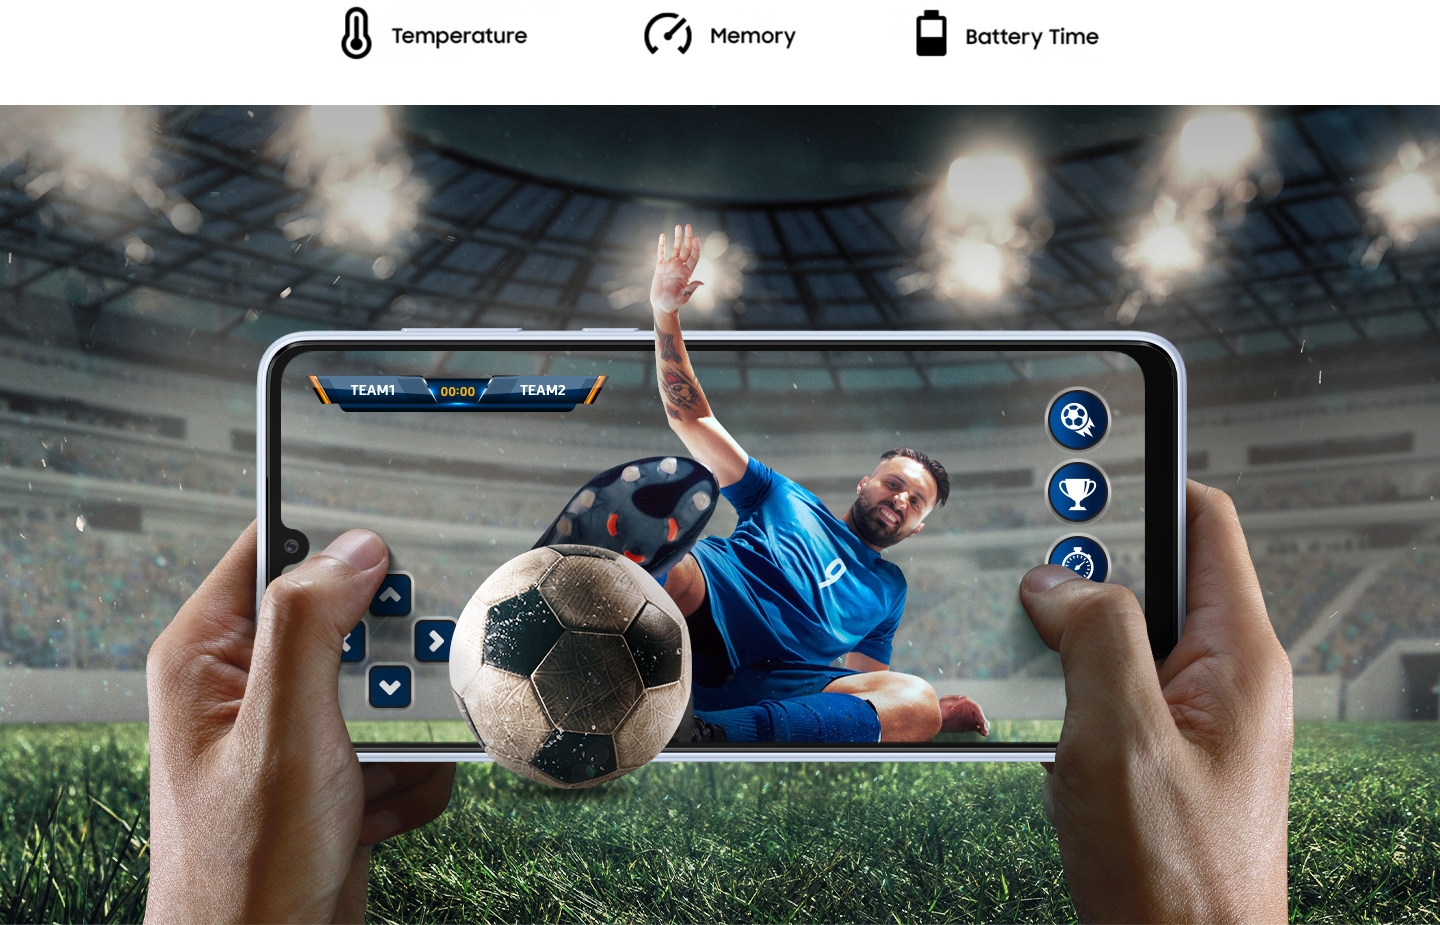 Dvije ruke drže Galaxy A33 5G uređaj u Pejzažnom načinu rada, dok se igra fudbalska igra. Pozadina pokazuje atmosferu sa stadiona u igri proširenu izvan ekrana. Unutar ekrana fudbaler skače prema lopti i oboje su prikazani malo izvan ekrana. Iznad, tekst glasi „Temperatura, memorija i vrijeme baterije.” 